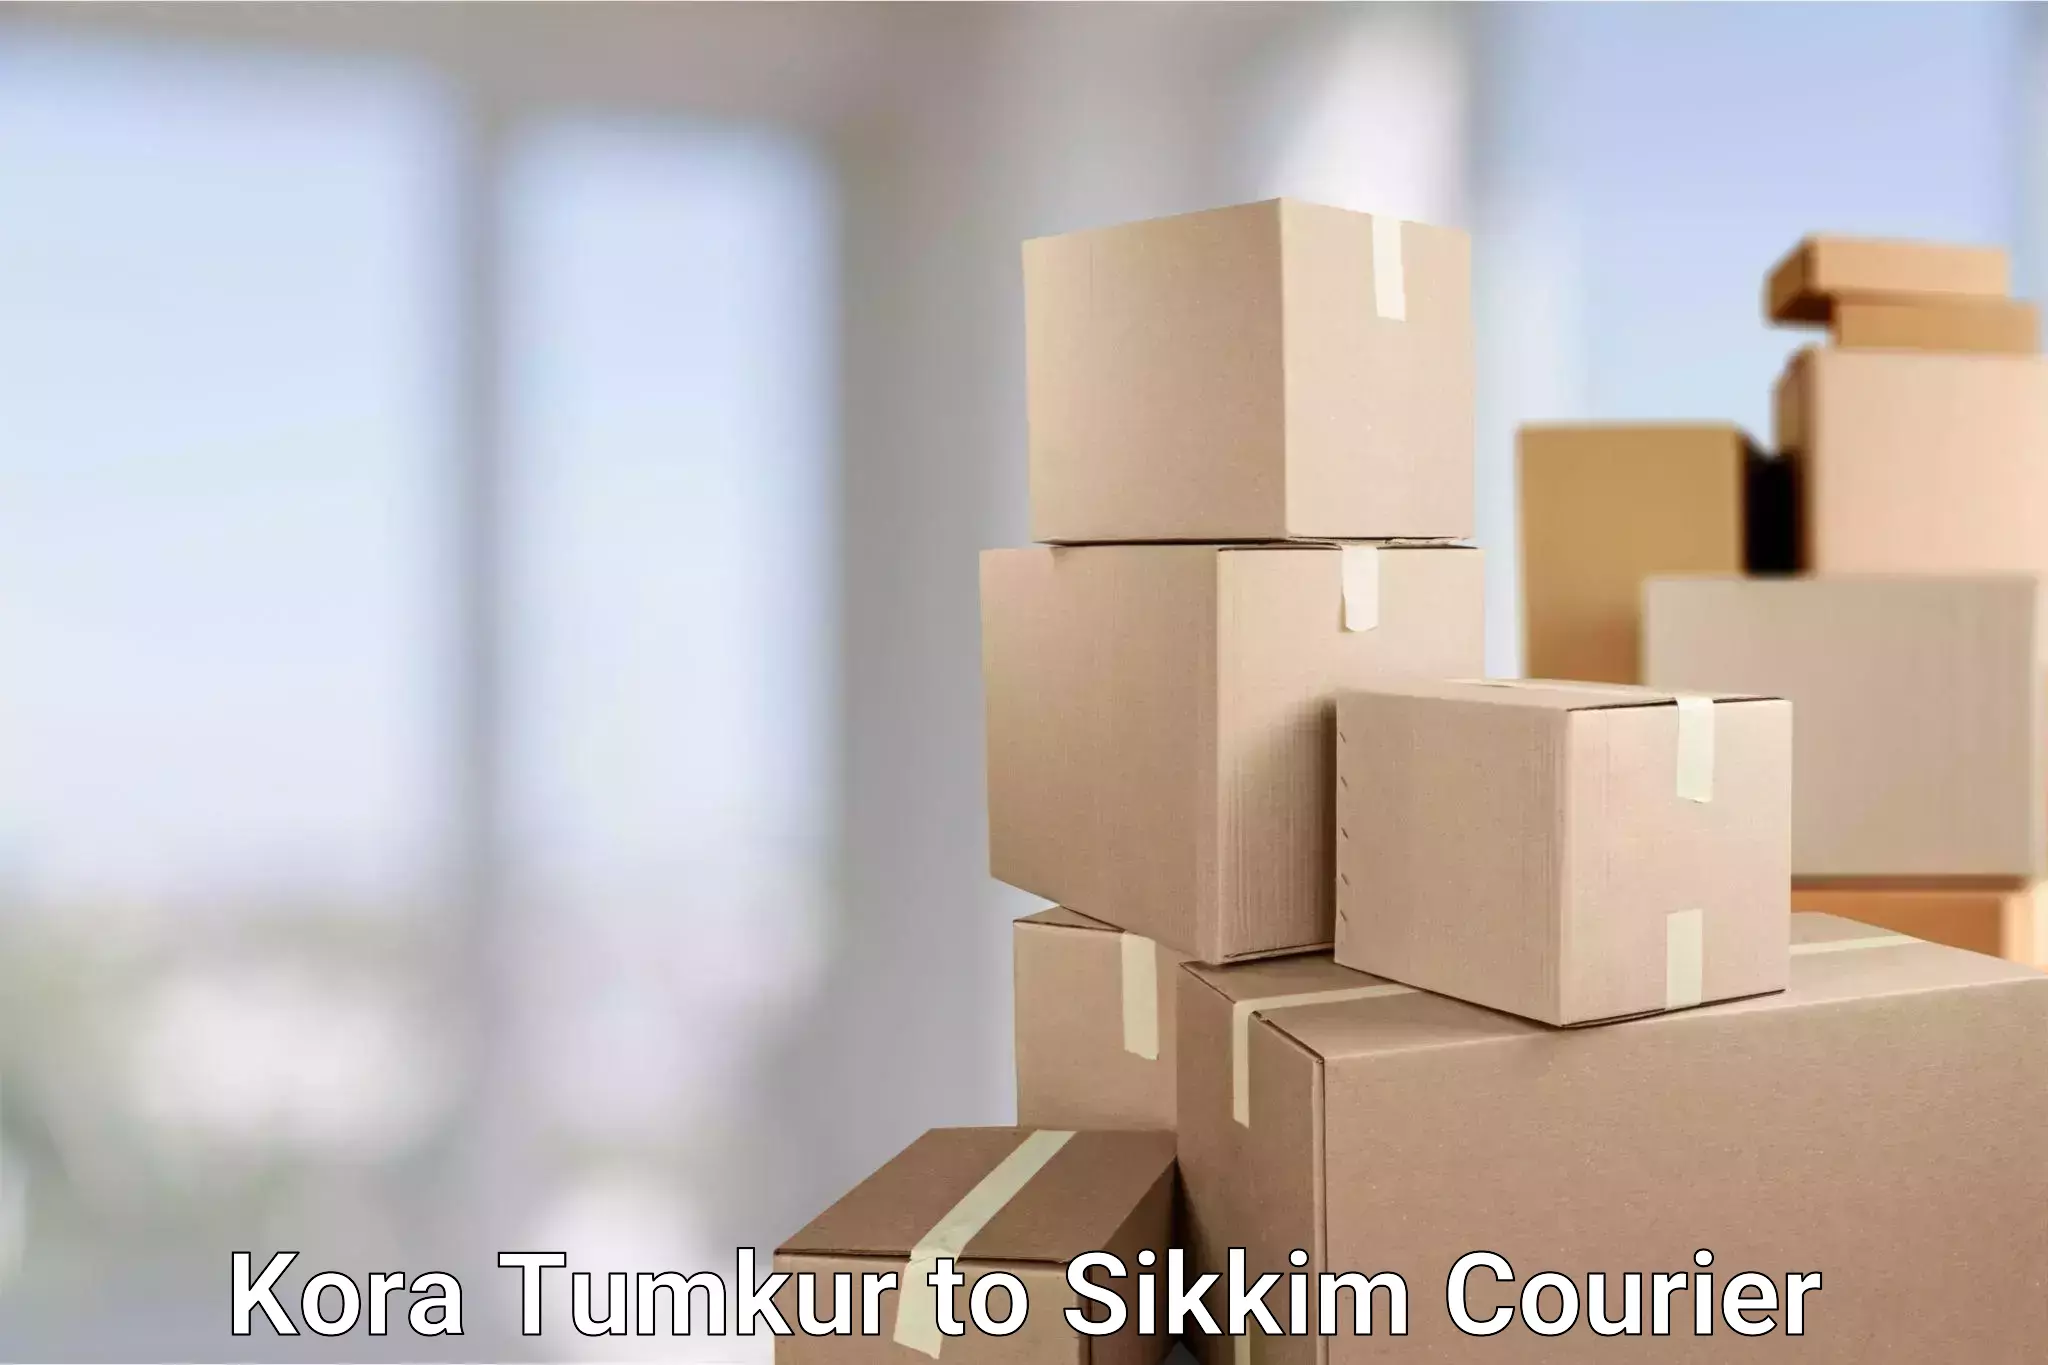 Professional parcel services Kora Tumkur to Gangtok